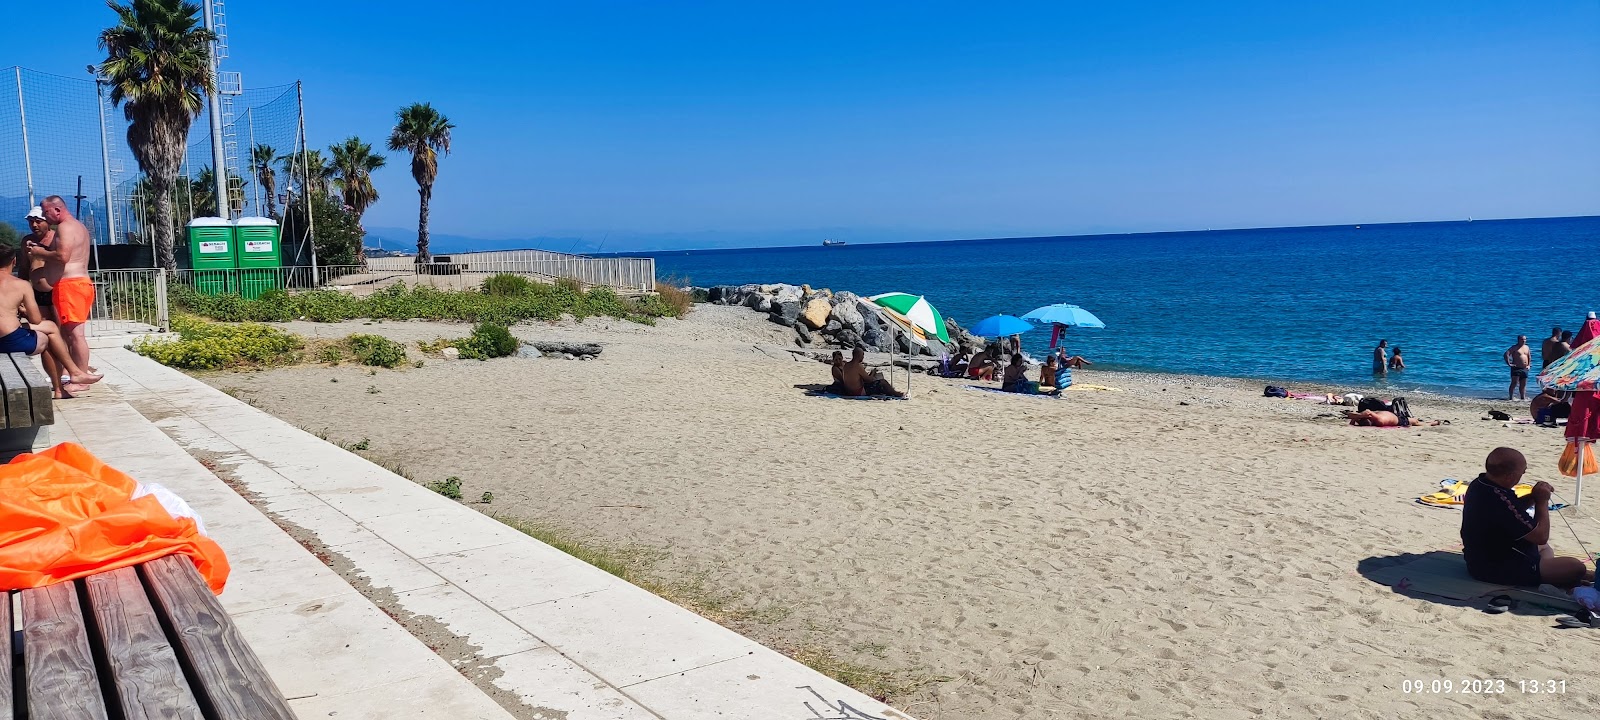 Foto van Spiaggia di Zinola met hoog niveau van netheid